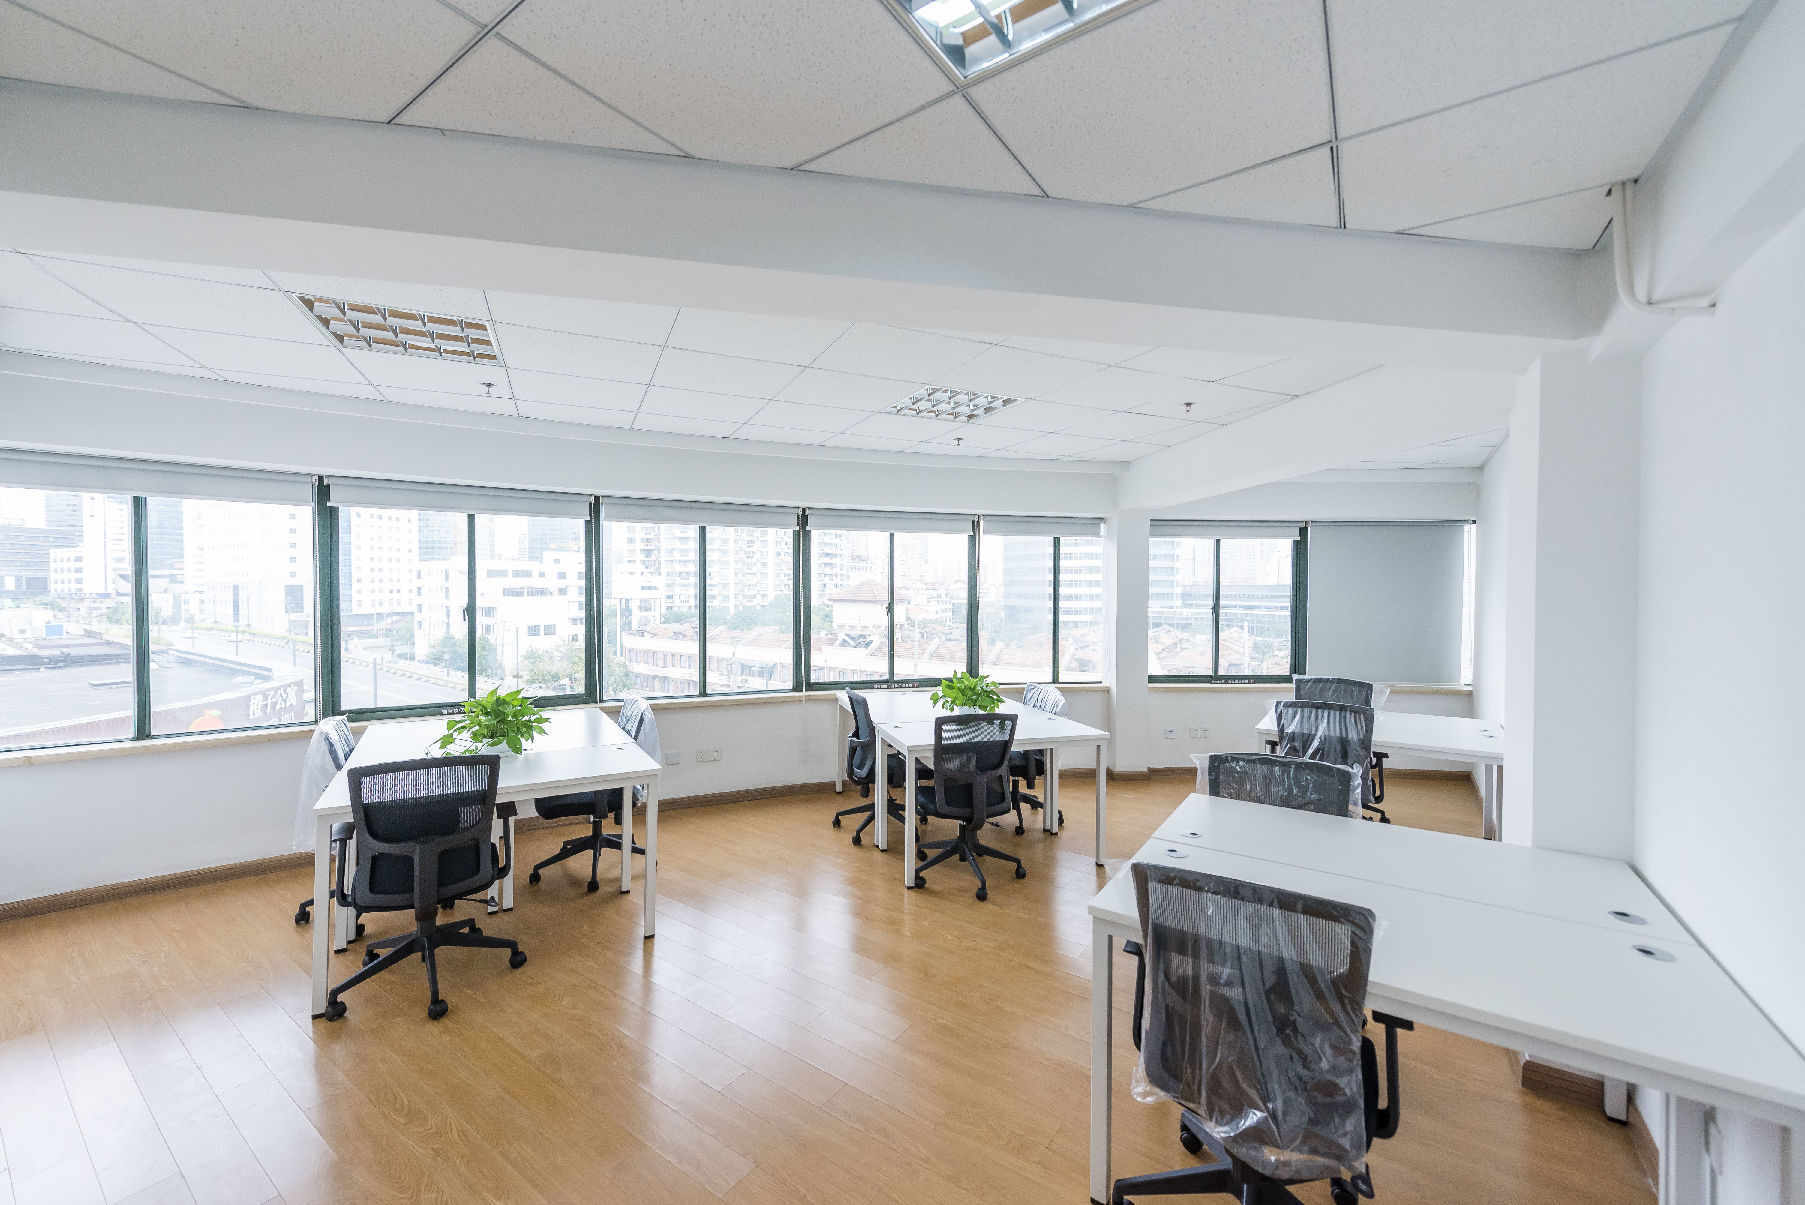 静安创业园区245平米办公室出租_4.80元/m²/天